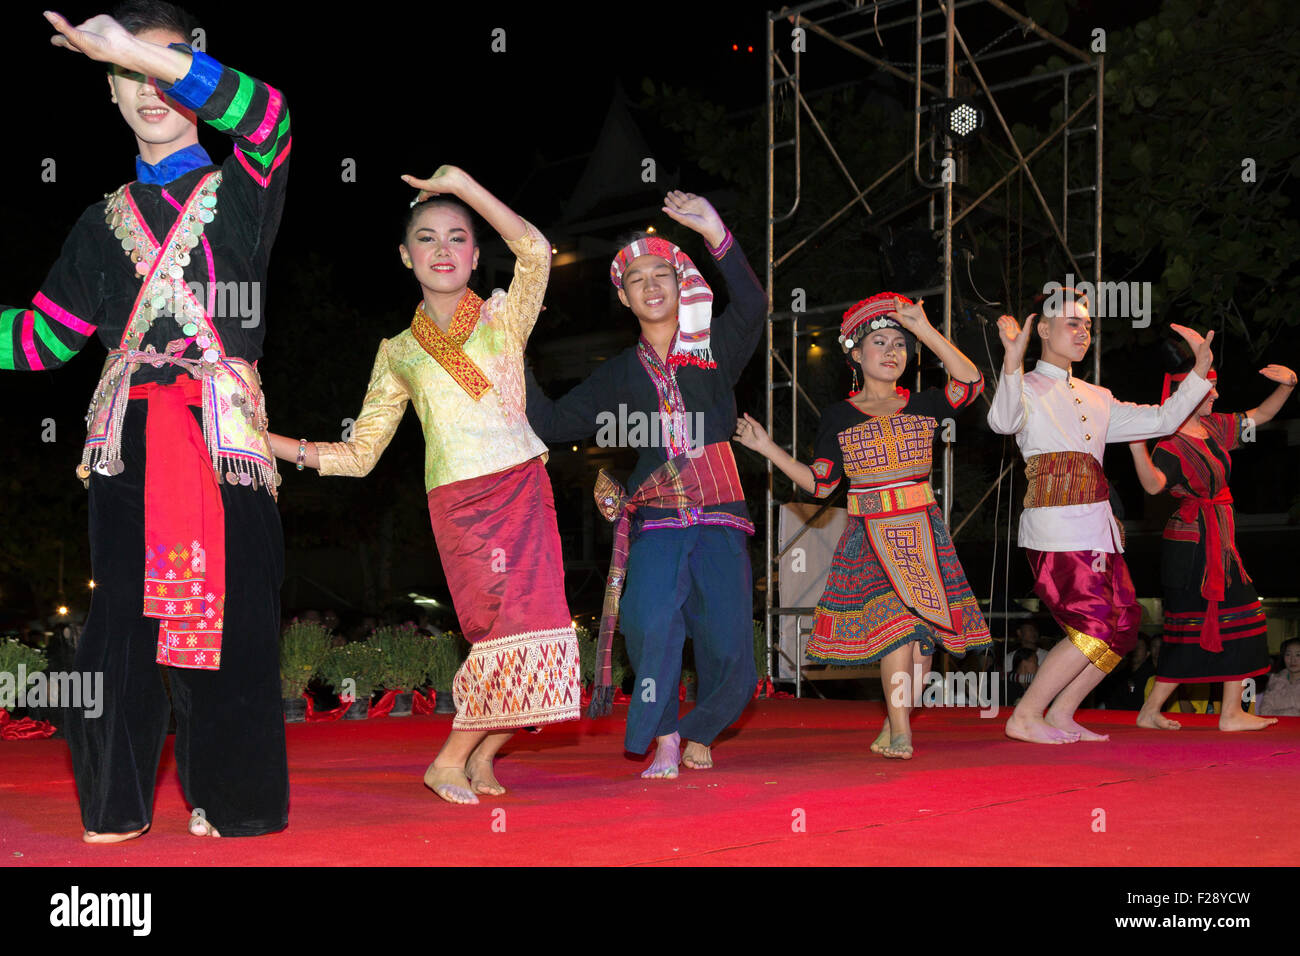 Dancers at culture show, Luang Prabang, Laos Stock Photo